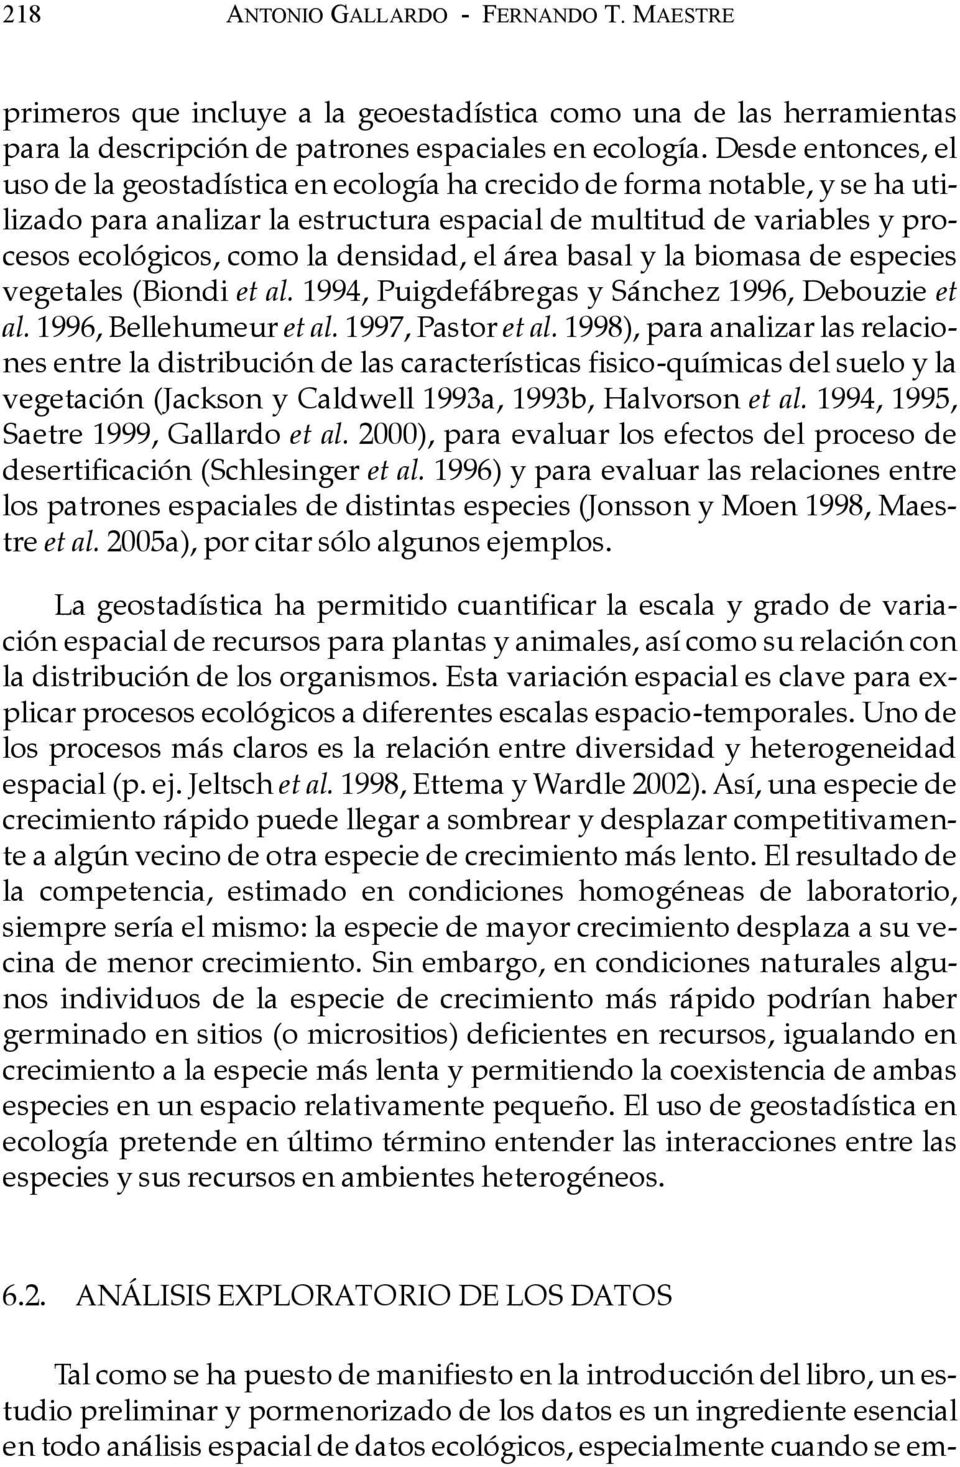 densidad, el área basal y la biomasa de especies vegetales (Biondi et al. 1994, Puigdefábregas y Sánchez 1996, Debouzie et al. 1996, Bellehumeur et al. 1997, Pastor et al.